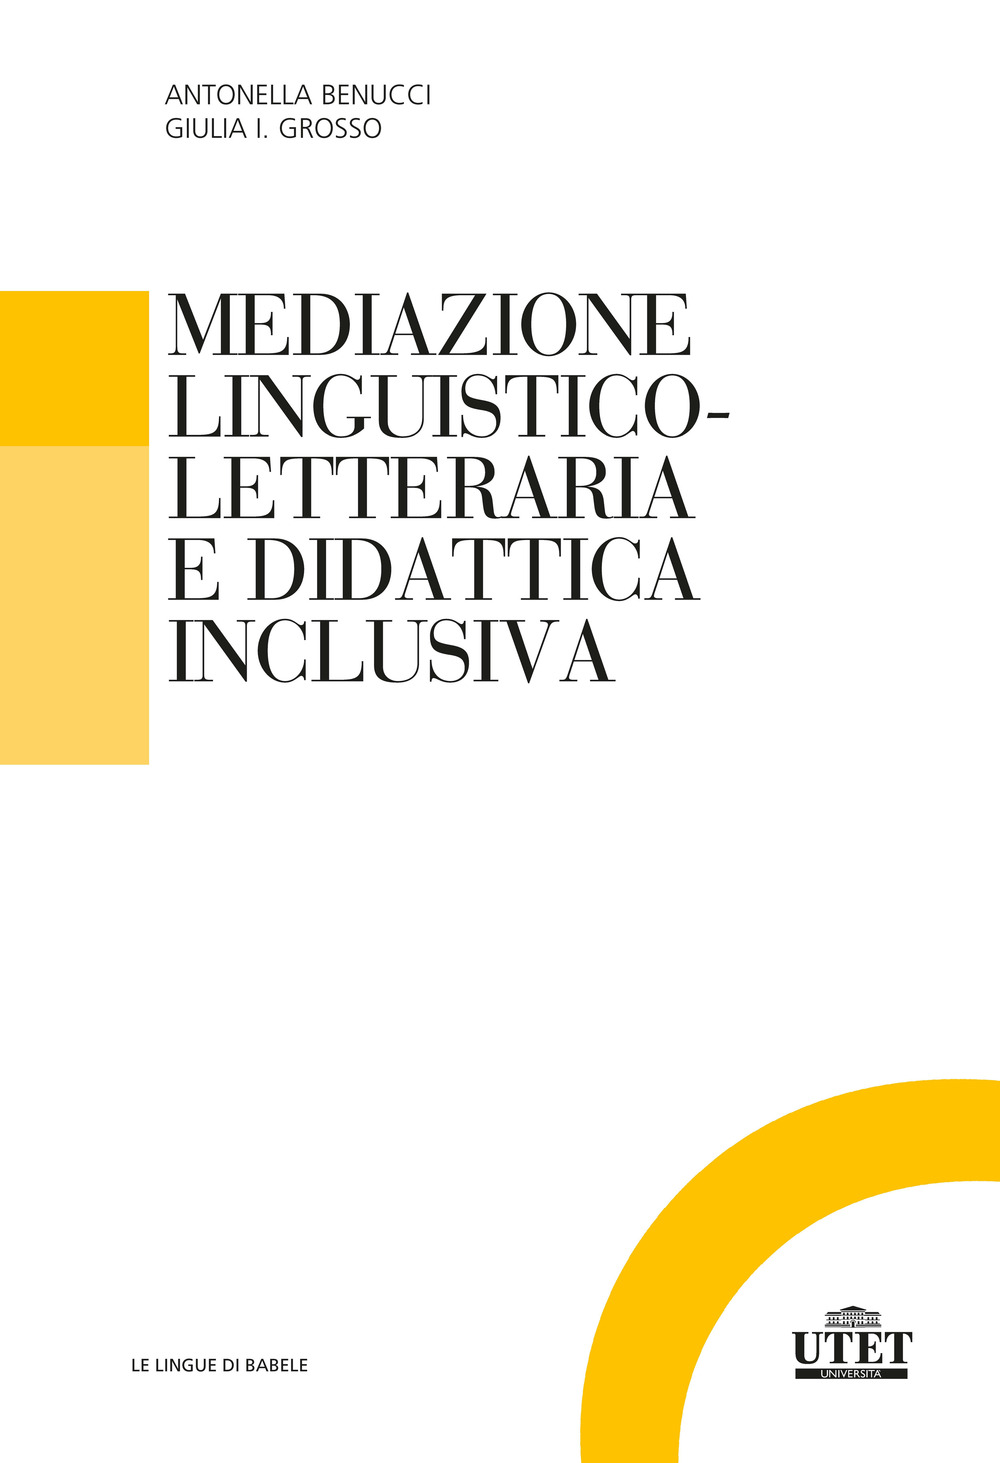 Libri Antonella Benucci / Grosso Giulia Isabella - Mediazione Linguistico-Culturale E Didattica Inclusiva NUOVO SIGILLATO, EDIZIONE DEL 09/12/2021 SUBITO DISPONIBILE